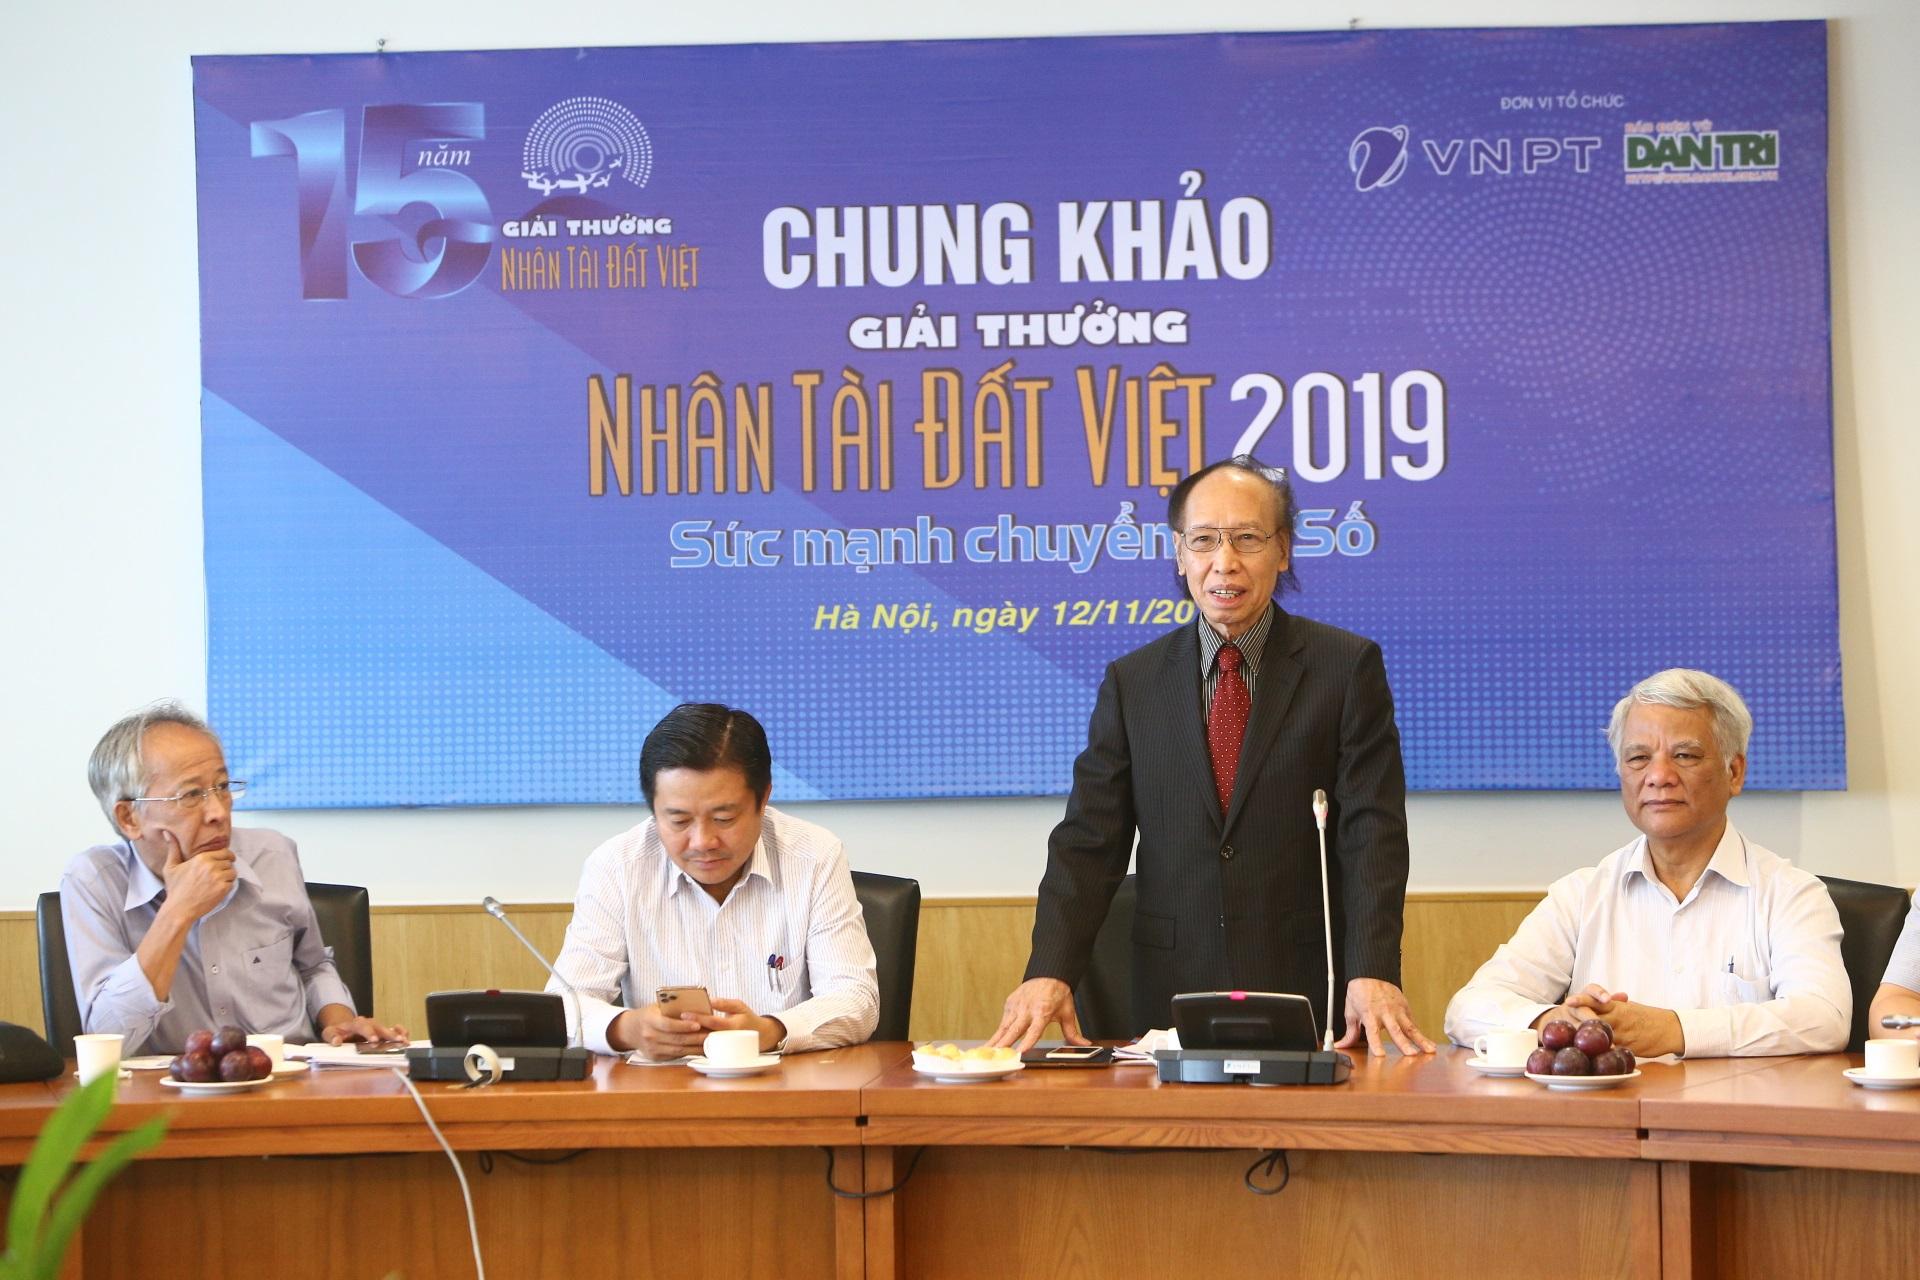 Ông Phạm Huy Hoàn - Trưởng ban tổ chức Giải thưởng Nhân tài Đất Việt 2019 phát biểu trước Hội đồng Giám khảo Chung khảo.